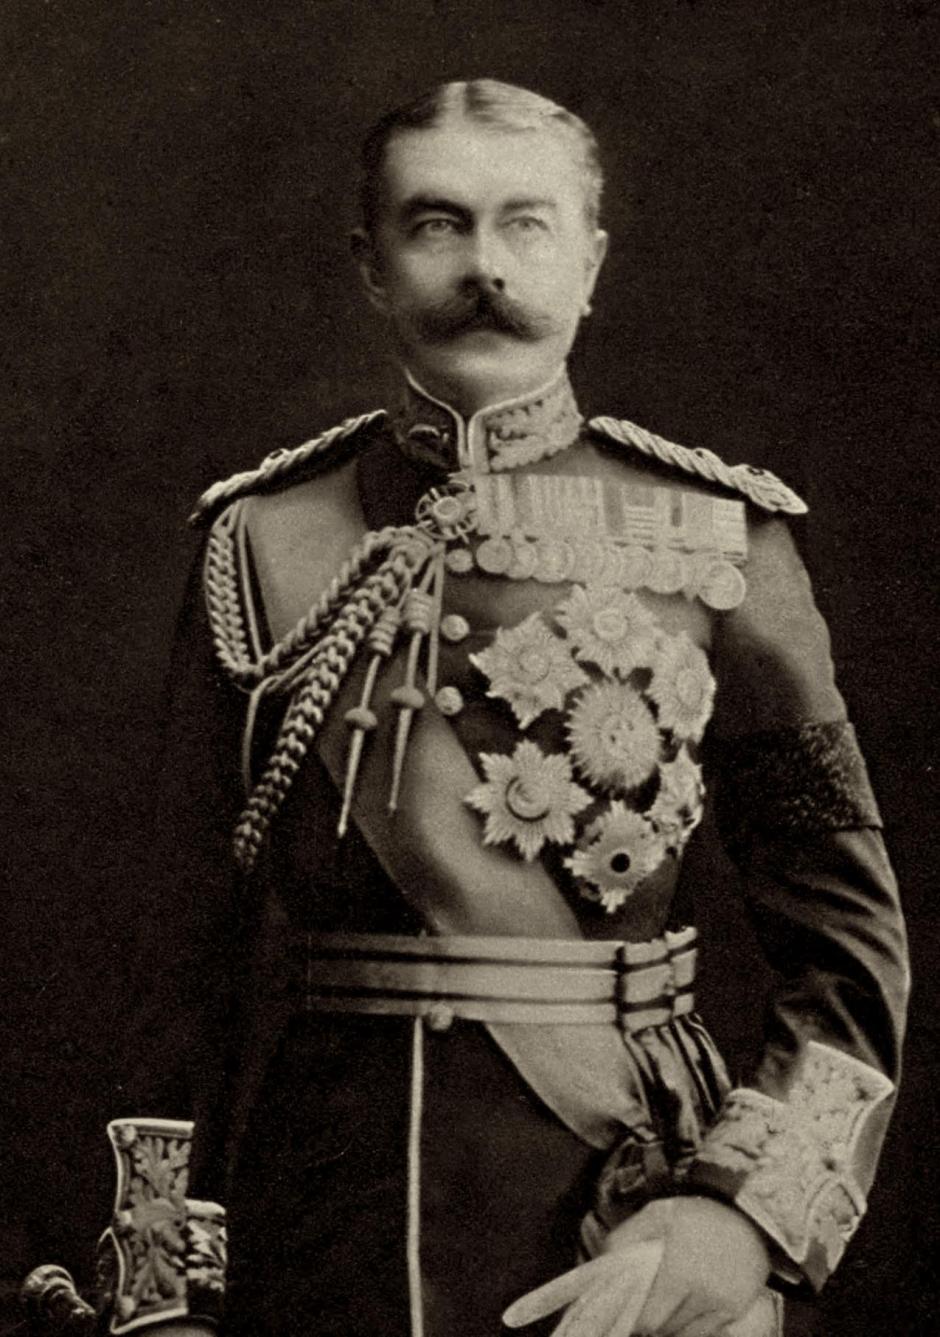 Field Marshal Herbert Kitchener